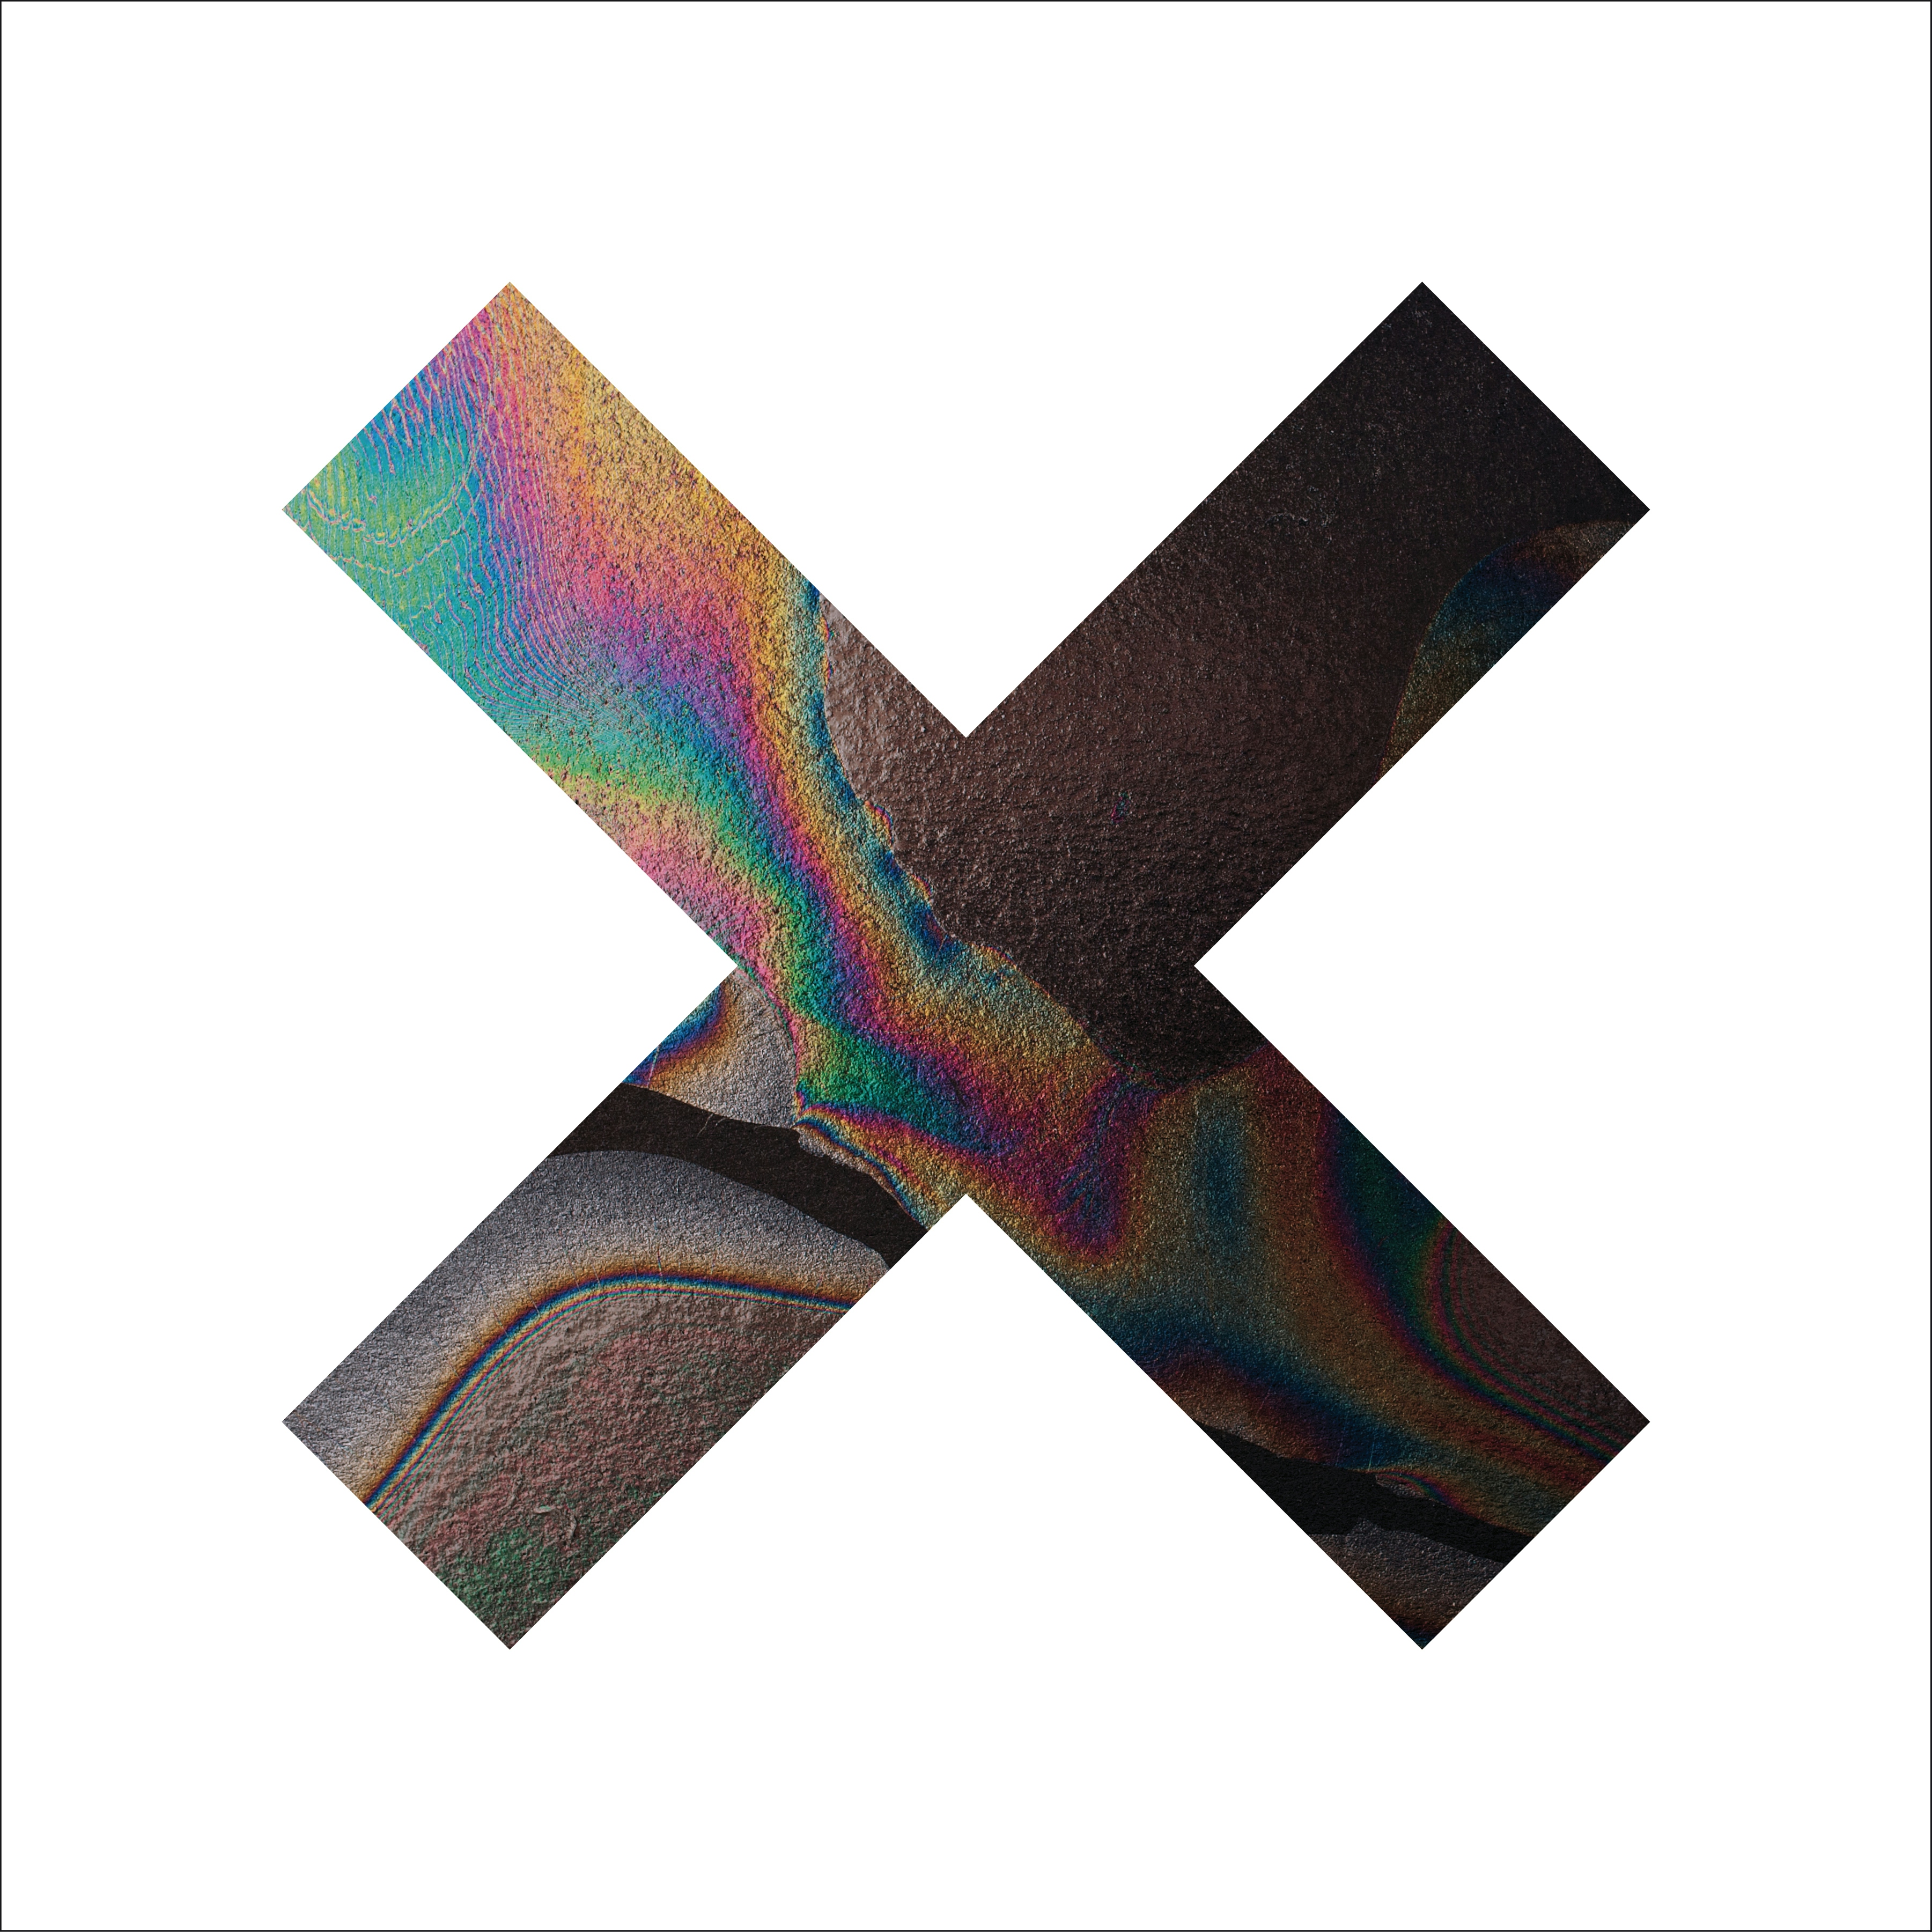 Album artwork for Album artwork for Coexist - 10th Anniversary by The xx by Coexist - 10th Anniversary - The xx